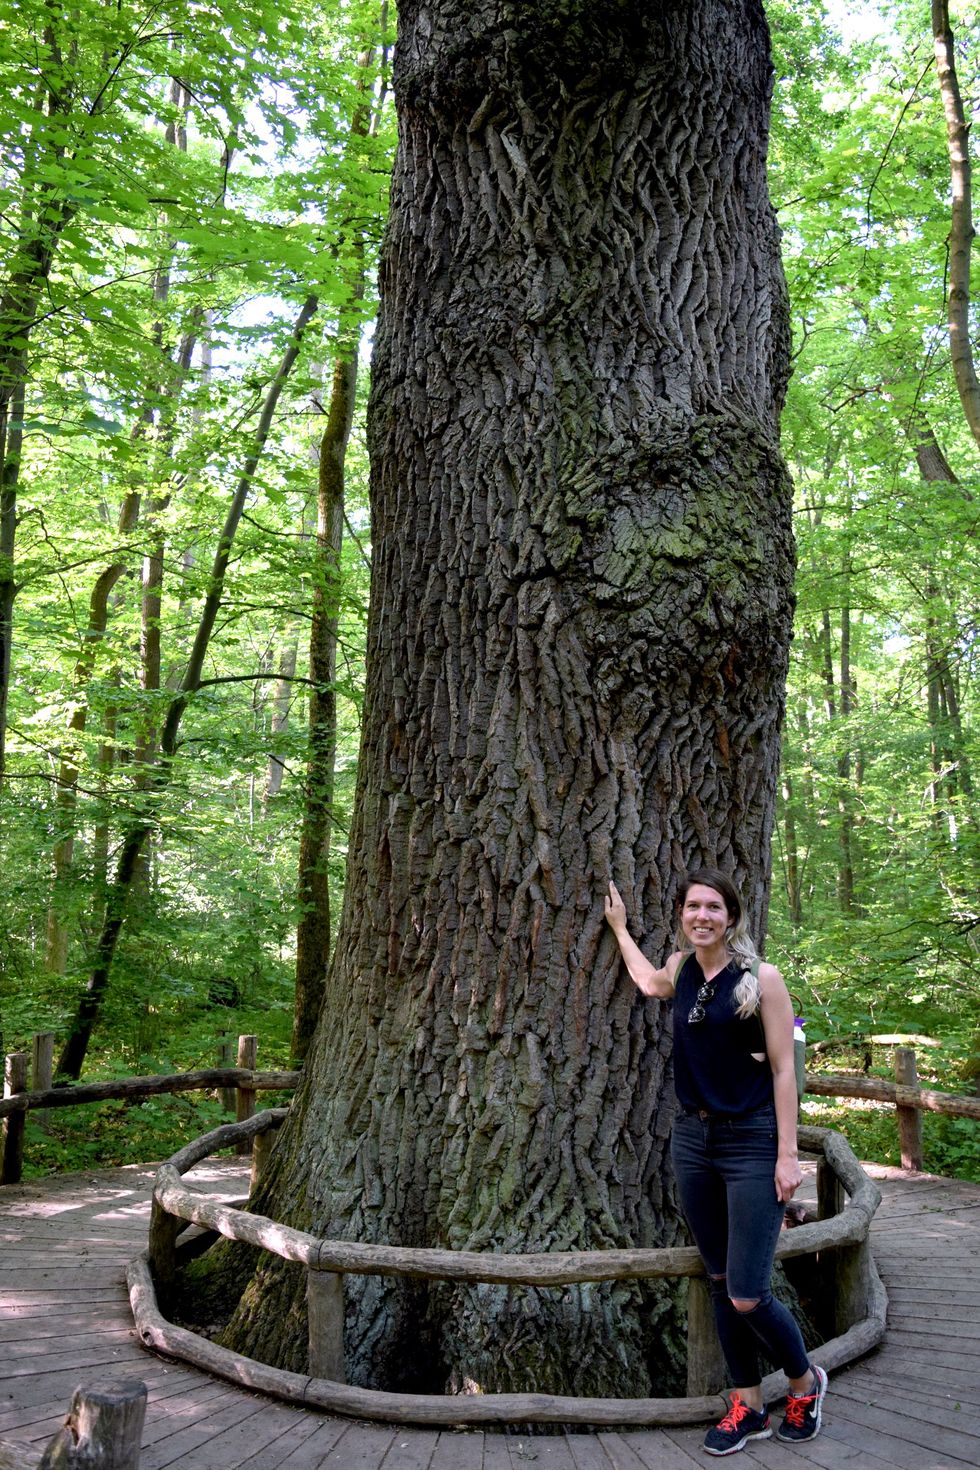 Deze eik is de dikste boom in nationaal park Hainich Grappig feit de buitenste rand van het platform geeft de omvang van de dikste boom in Duitsland aan Ruim buiten het platform staan houten paaltjes in een cirkel naar de omvang van de dikste boom ter wereld